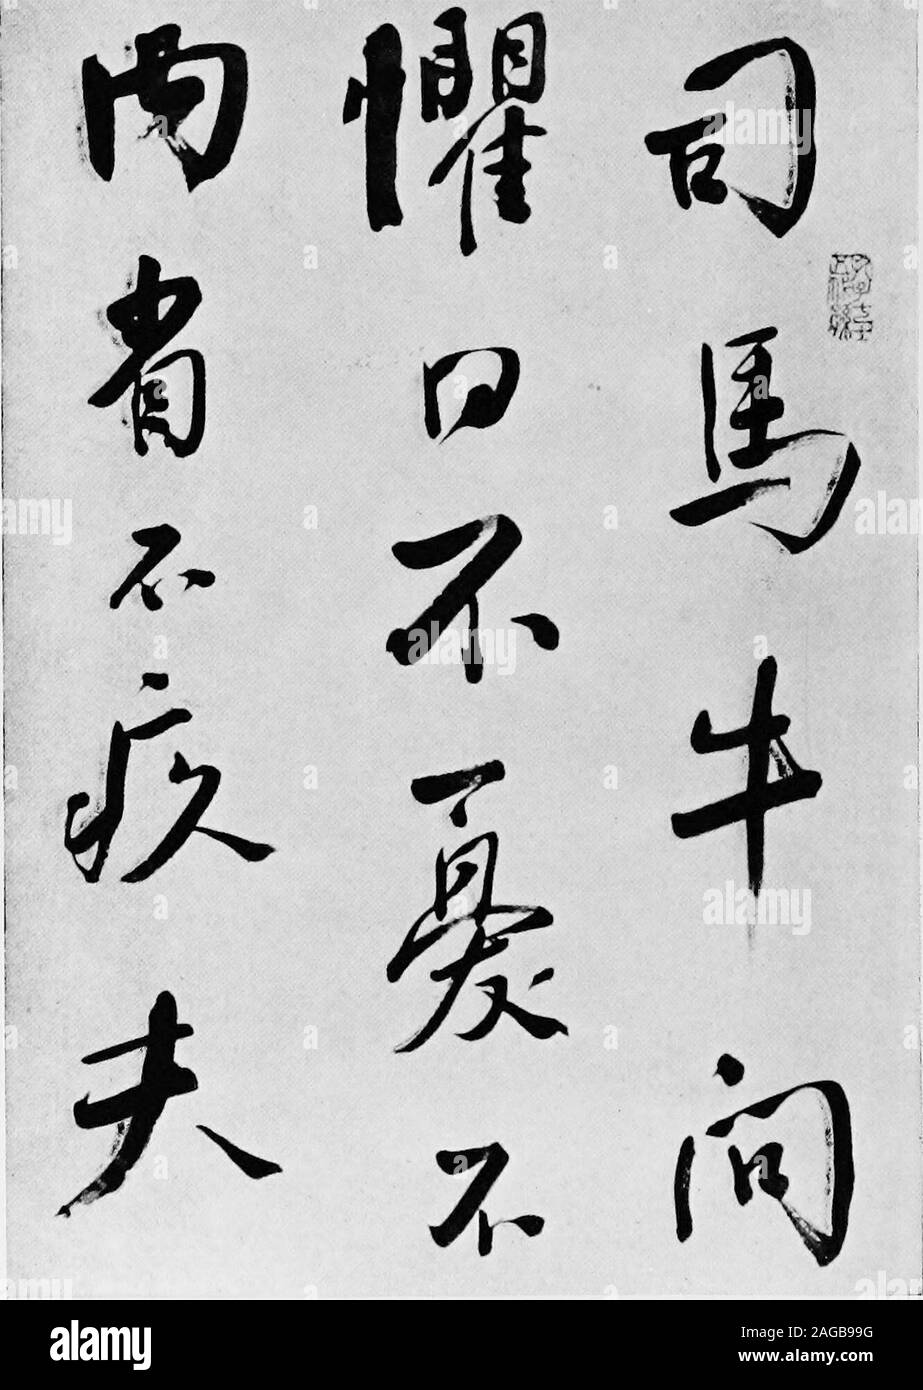 . Où la moitié du monde se réveille ; l'ancien et le nouveau au Japon, la Chine, les Philippines et l'Inde, rapporté avec une référence particulière aux conditions américaines. Comment le bois est scié DANS L'ORIENT - IL N'Y A AUCUNE PRATIQUE-ment des scieries. Une citation de Confucius c'est la partie supérieure d'un faites défiler gentiment écrit pour l'auteur par M. KungHsiang ou Koh (Alfred E. Kung comme il signe lui-même en anglais). M. Kung isa descendant de Confucius (Was Kung-zu) de la soixante-cinquième génération, et dont le devis thecomplete scroll est une reproduction en charactersreads chinois comme suit : SSU-ma Niu demandé Banque D'Images